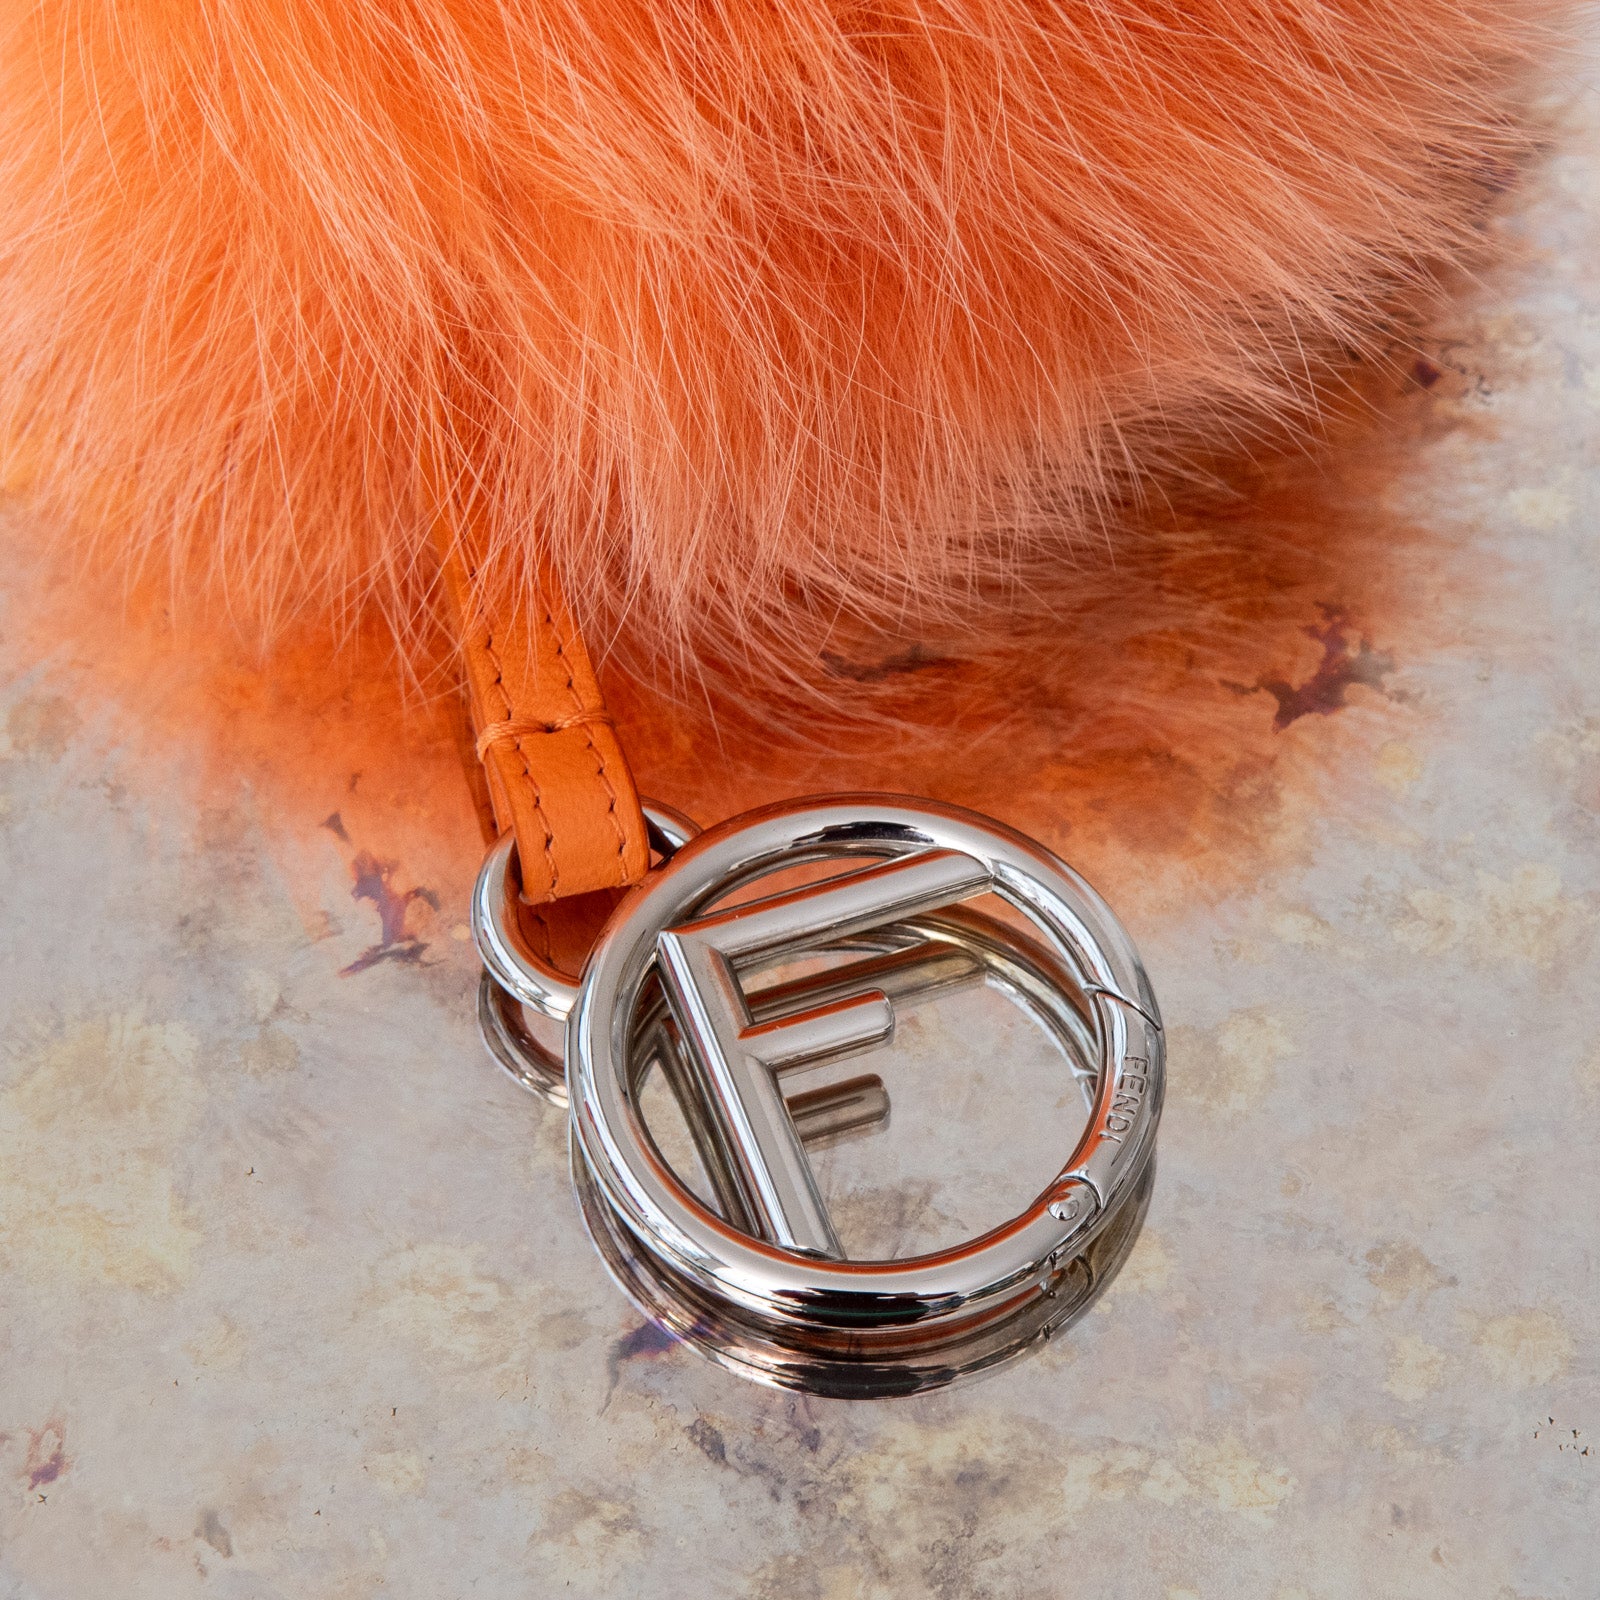 Fendi Orange Fur Pom Pom Key Ring - Image 2 of 4